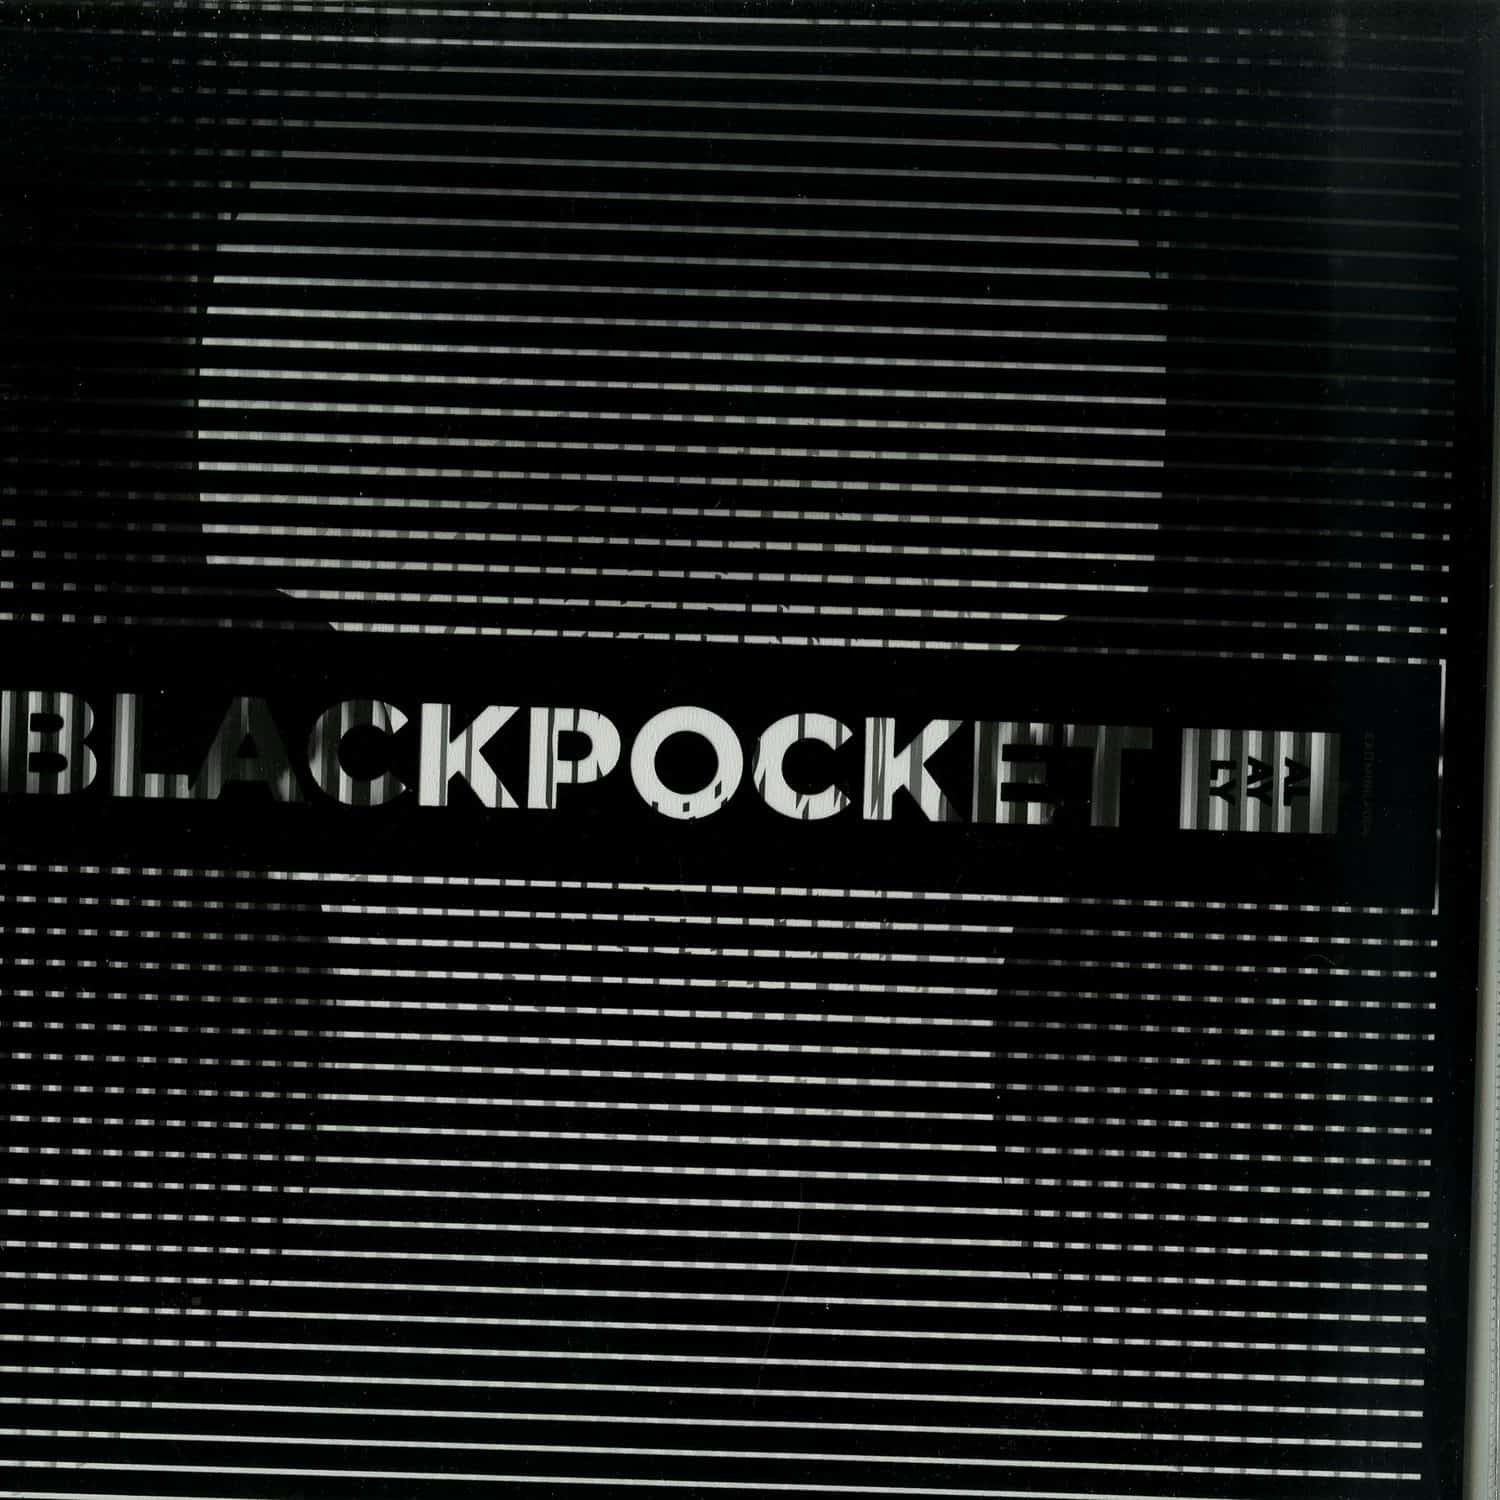 Blackpocket - ALAYLY